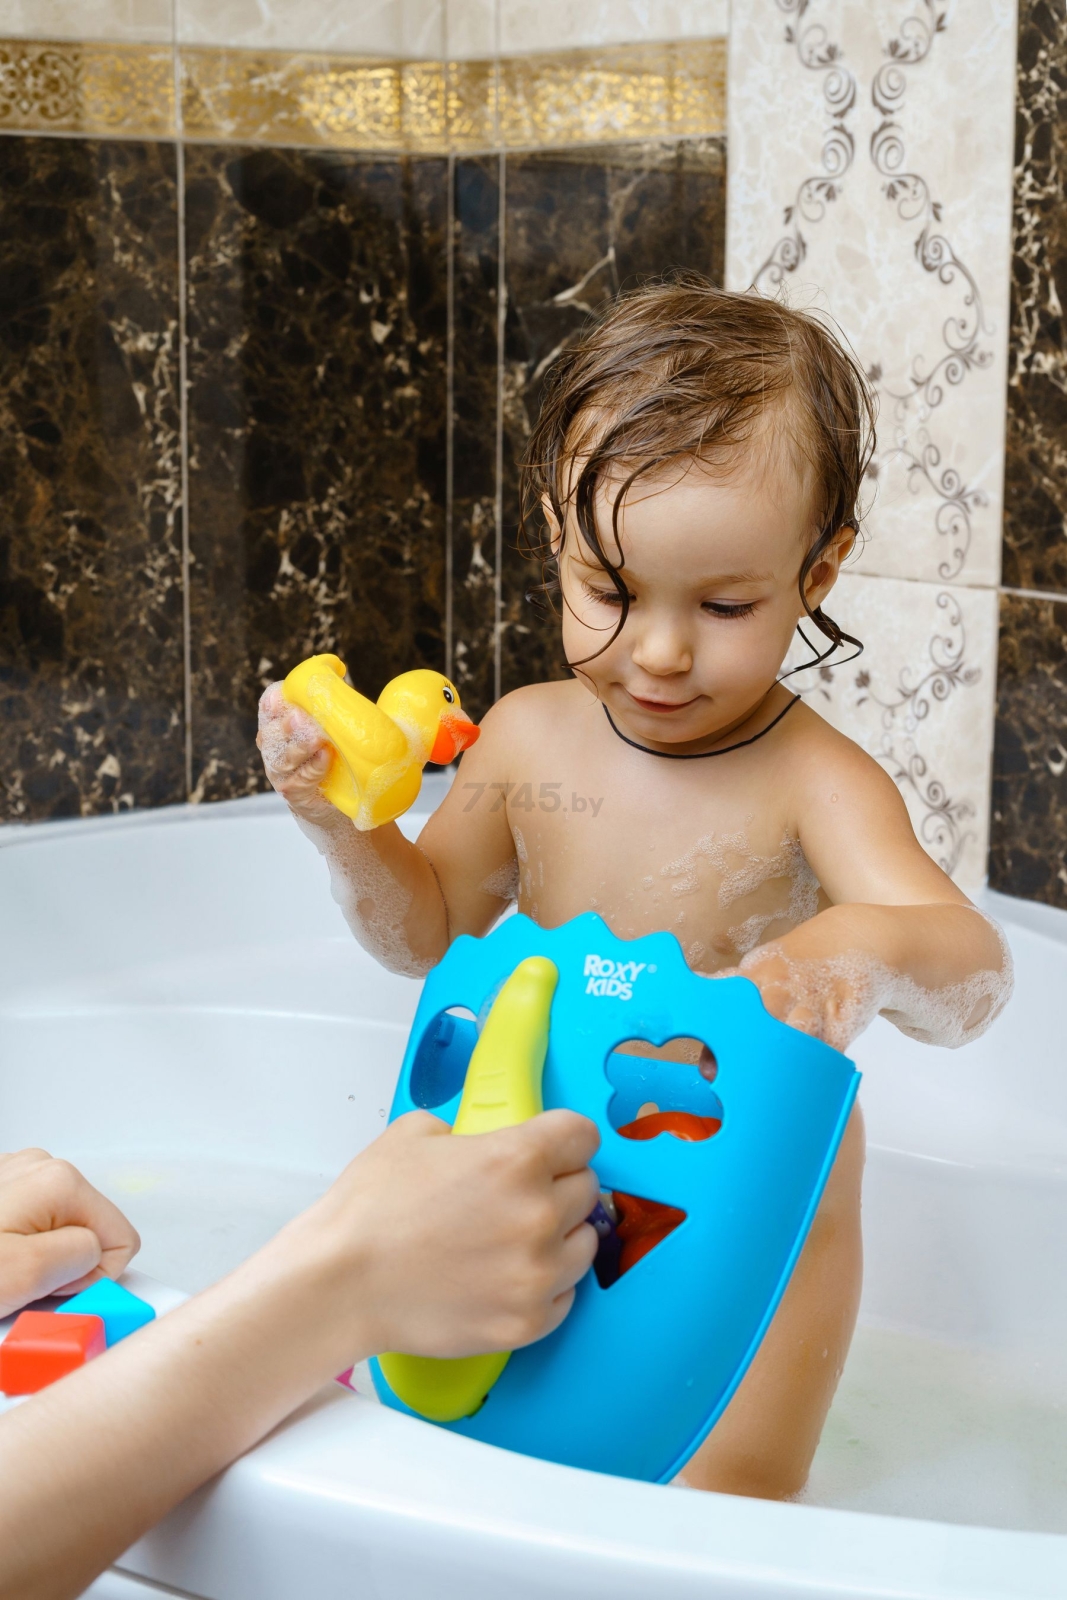 Органайзер для ванной ROXY-KIDS голубой (RTH-001B) - Фото 20